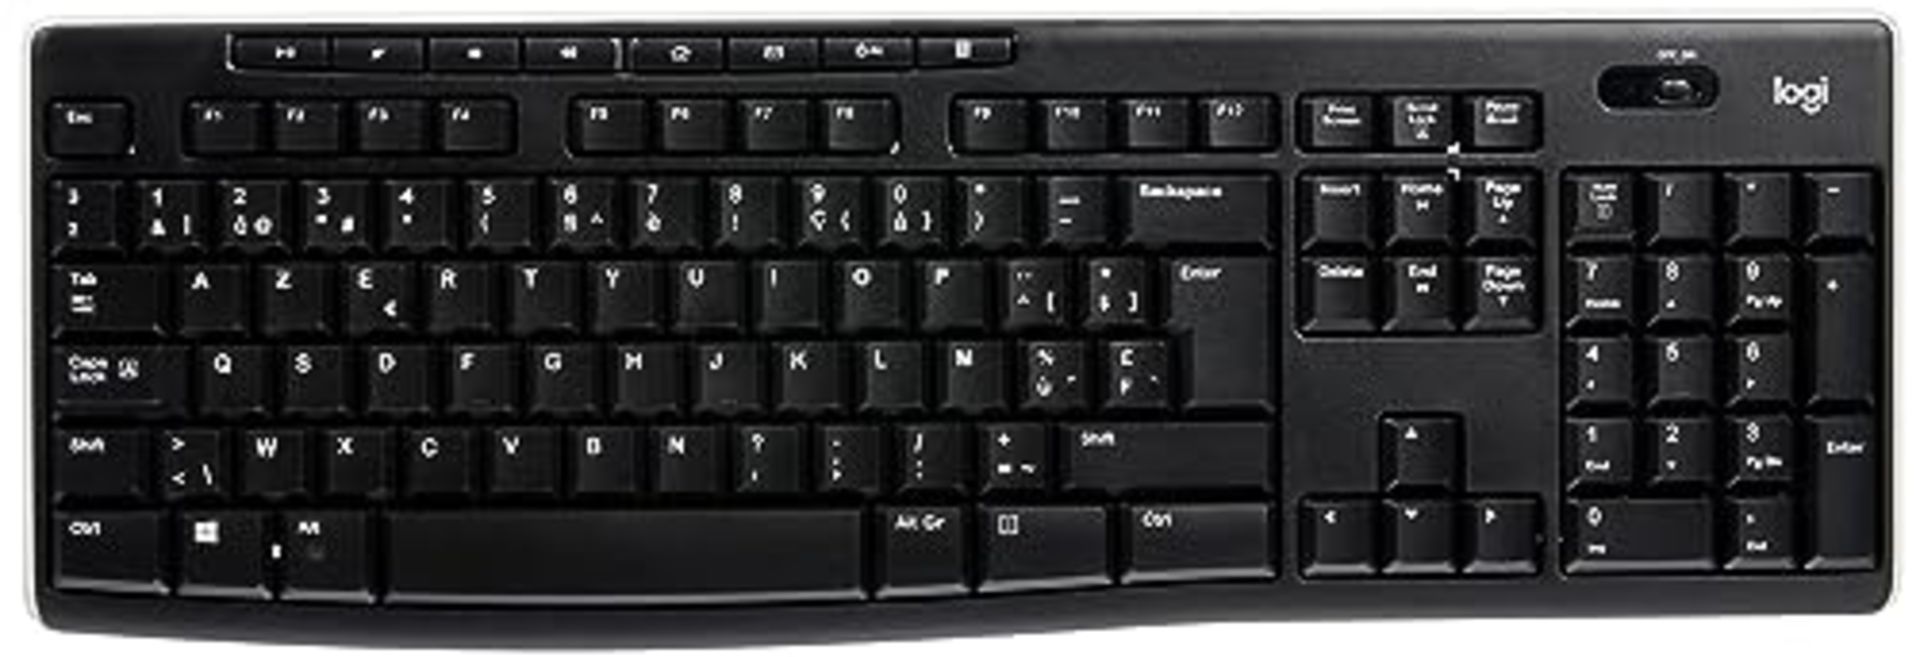 Logitech K270 Wireless Keyboard for Windows, AZERTY Belgian Layout - Black